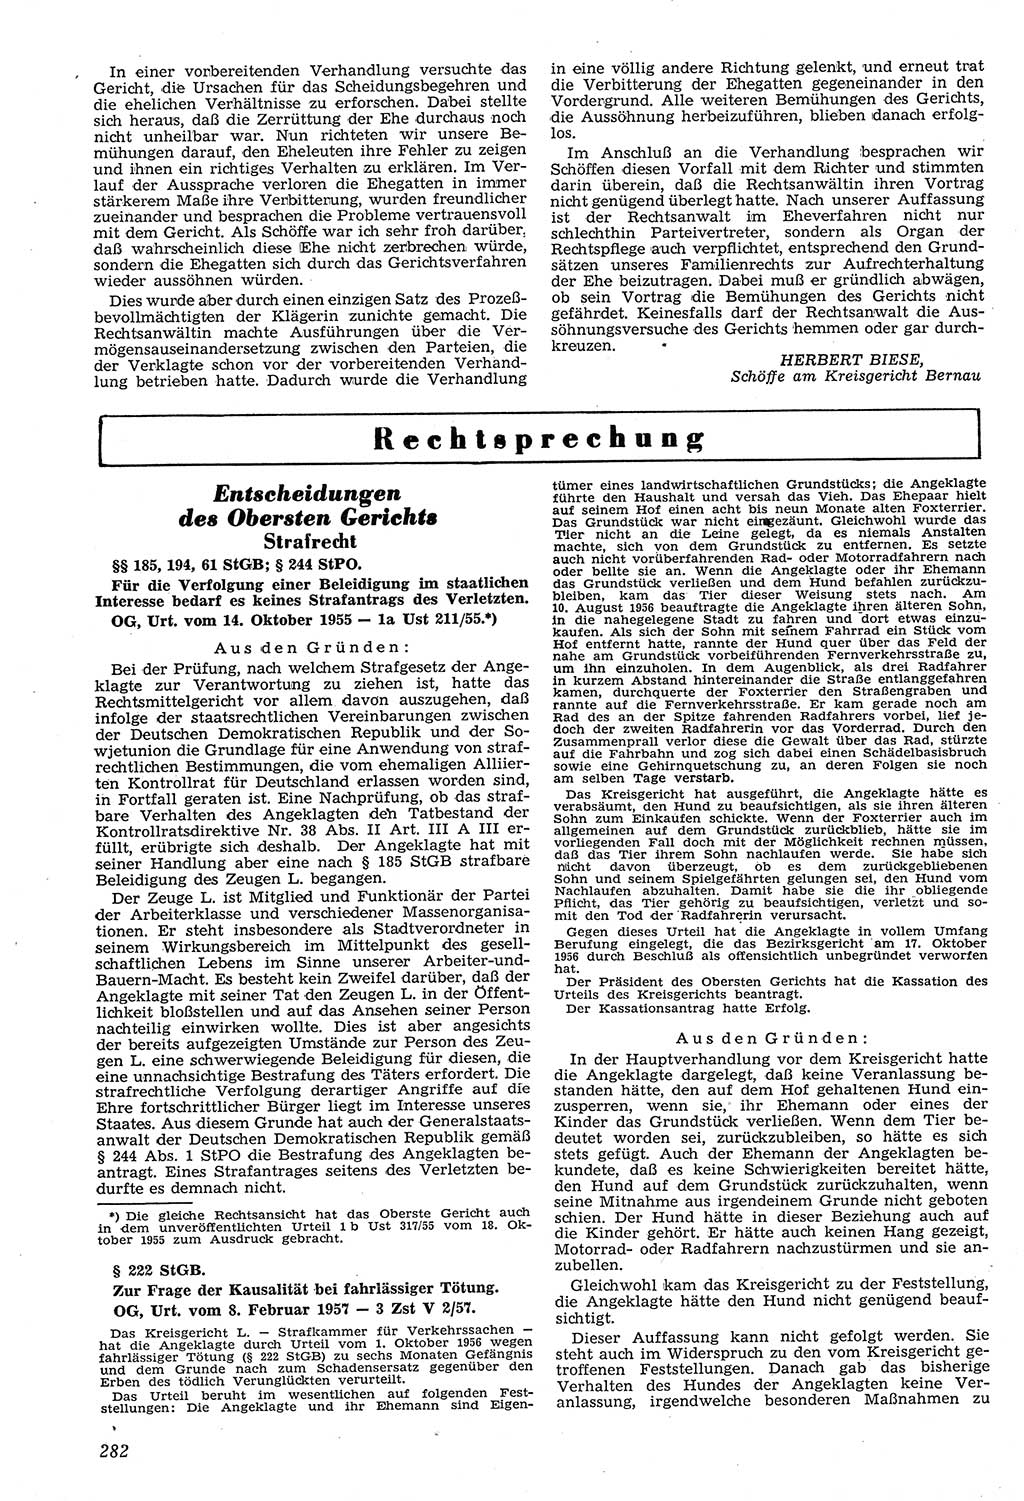 Neue Justiz (NJ), Zeitschrift für Recht und Rechtswissenschaft [Deutsche Demokratische Republik (DDR)], 11. Jahrgang 1957, Seite 282 (NJ DDR 1957, S. 282)